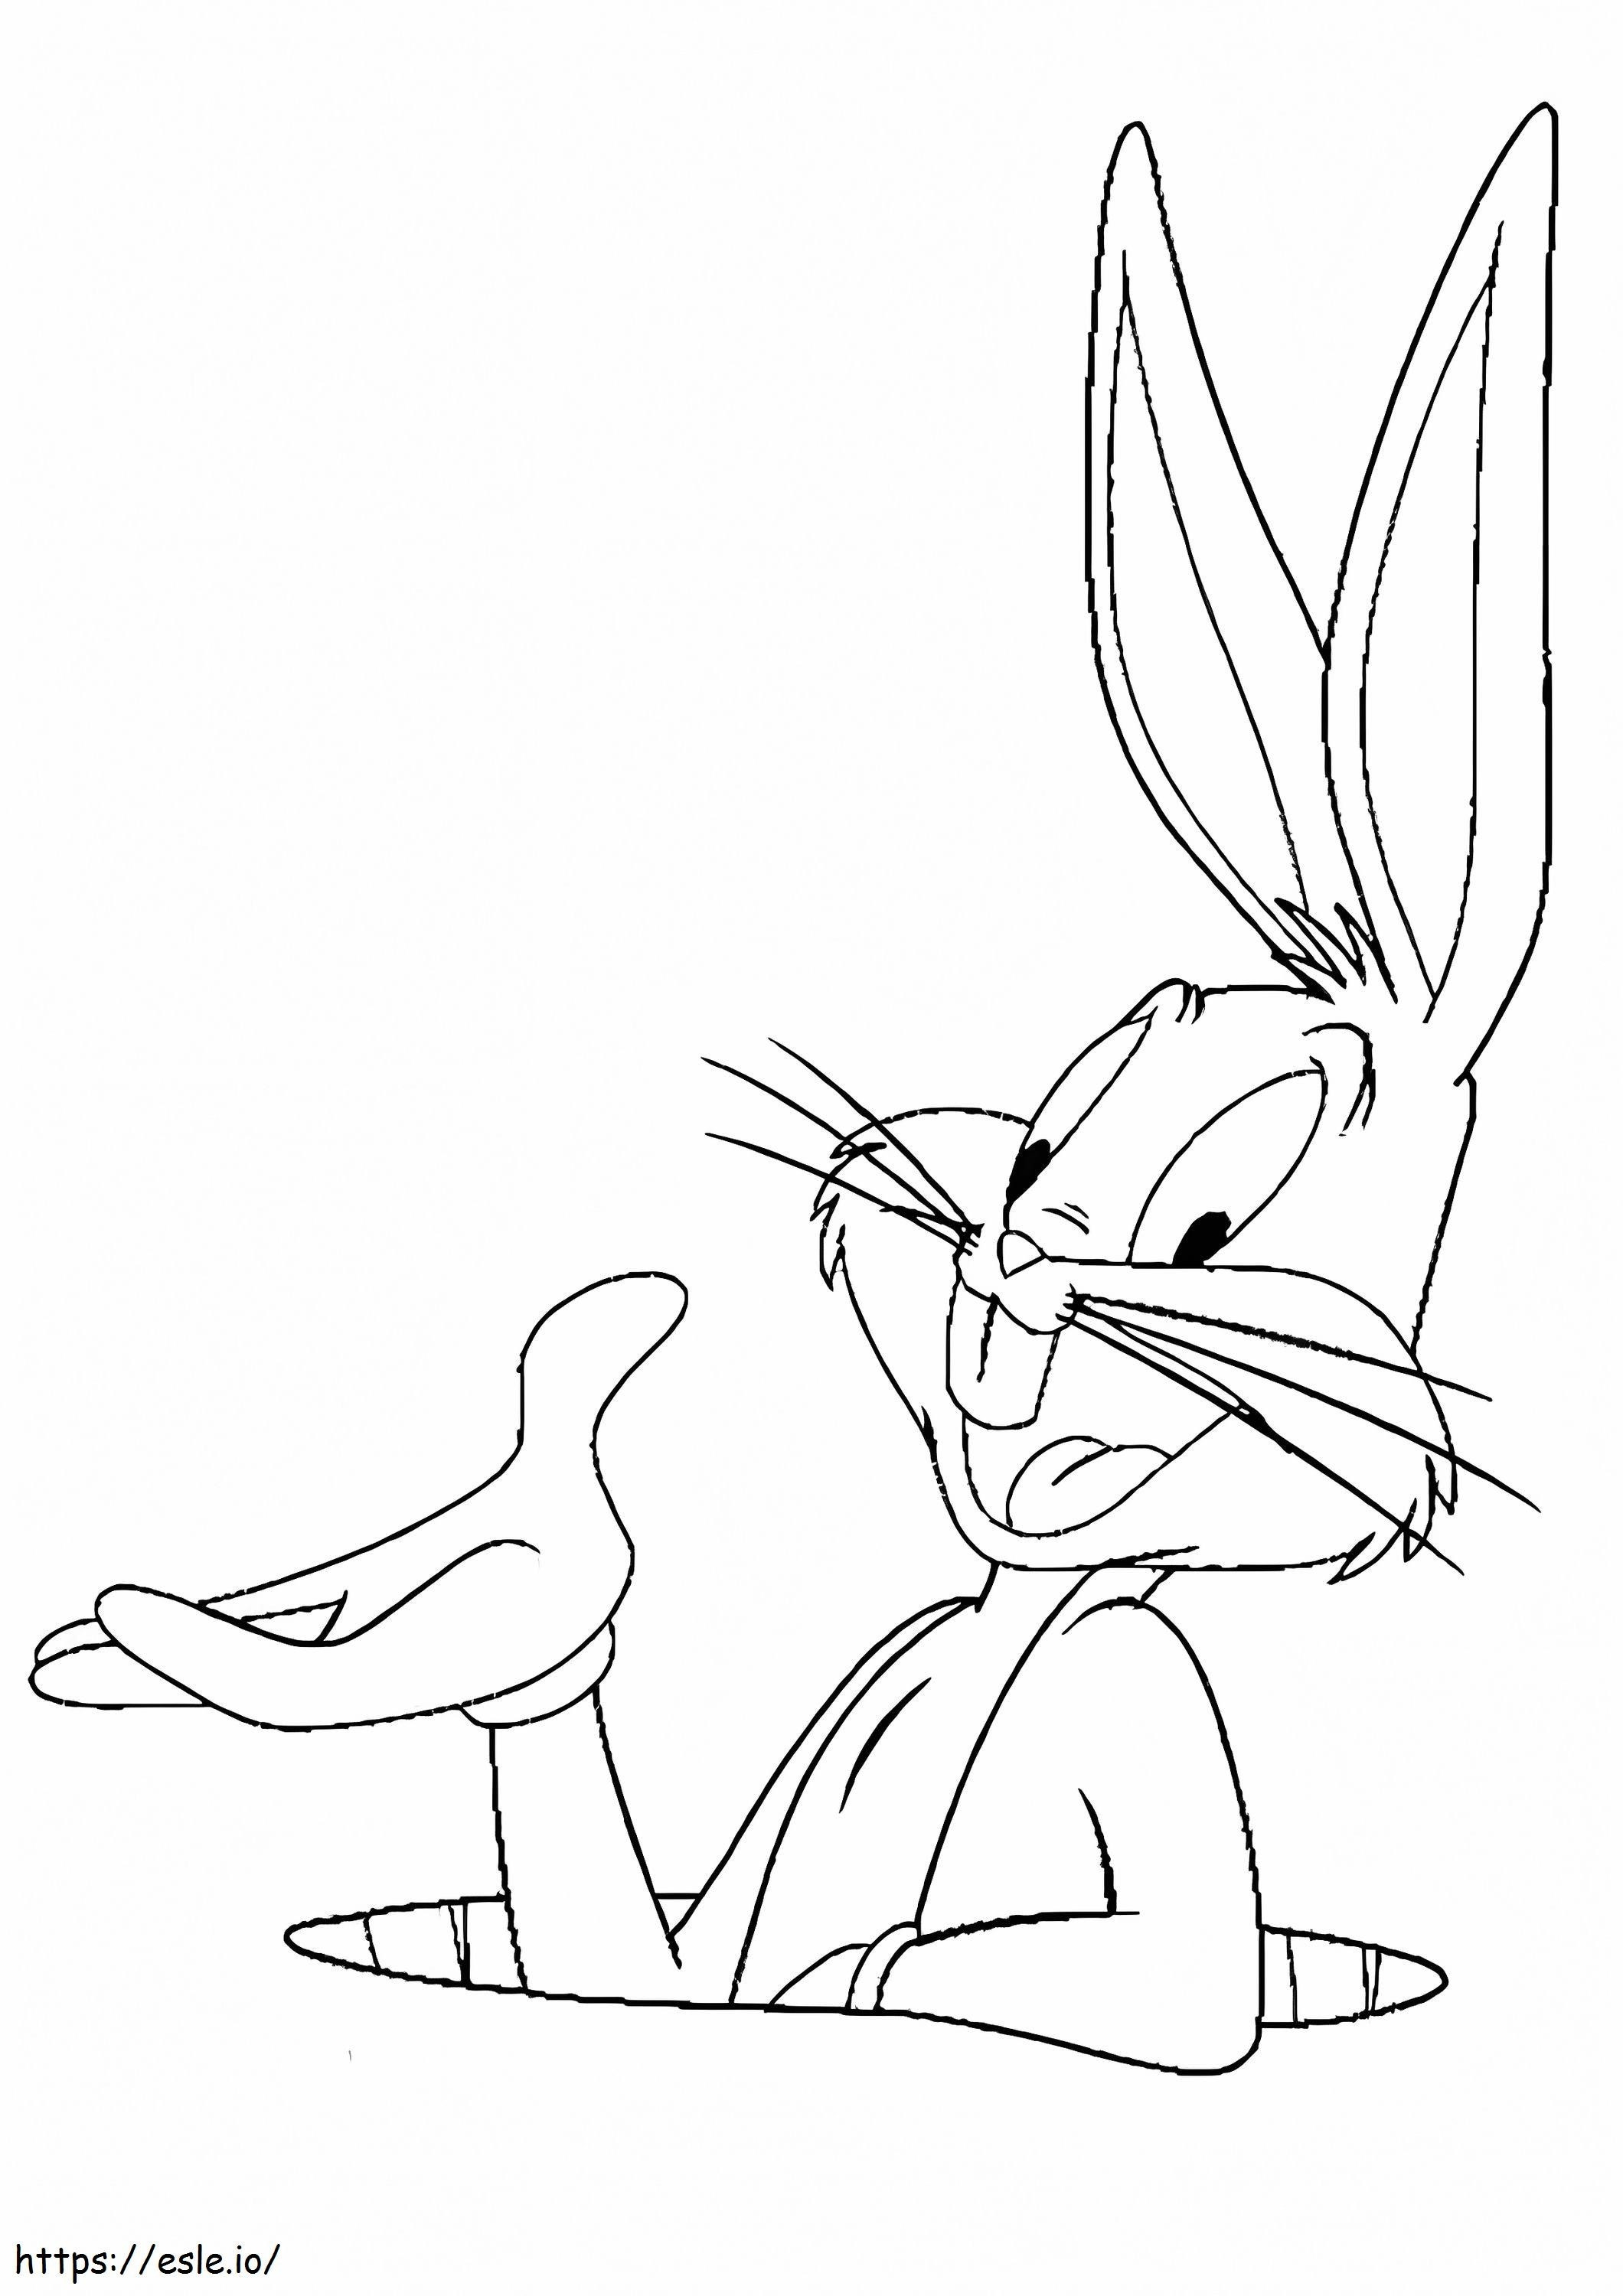 Big Bug Bunny coloring page